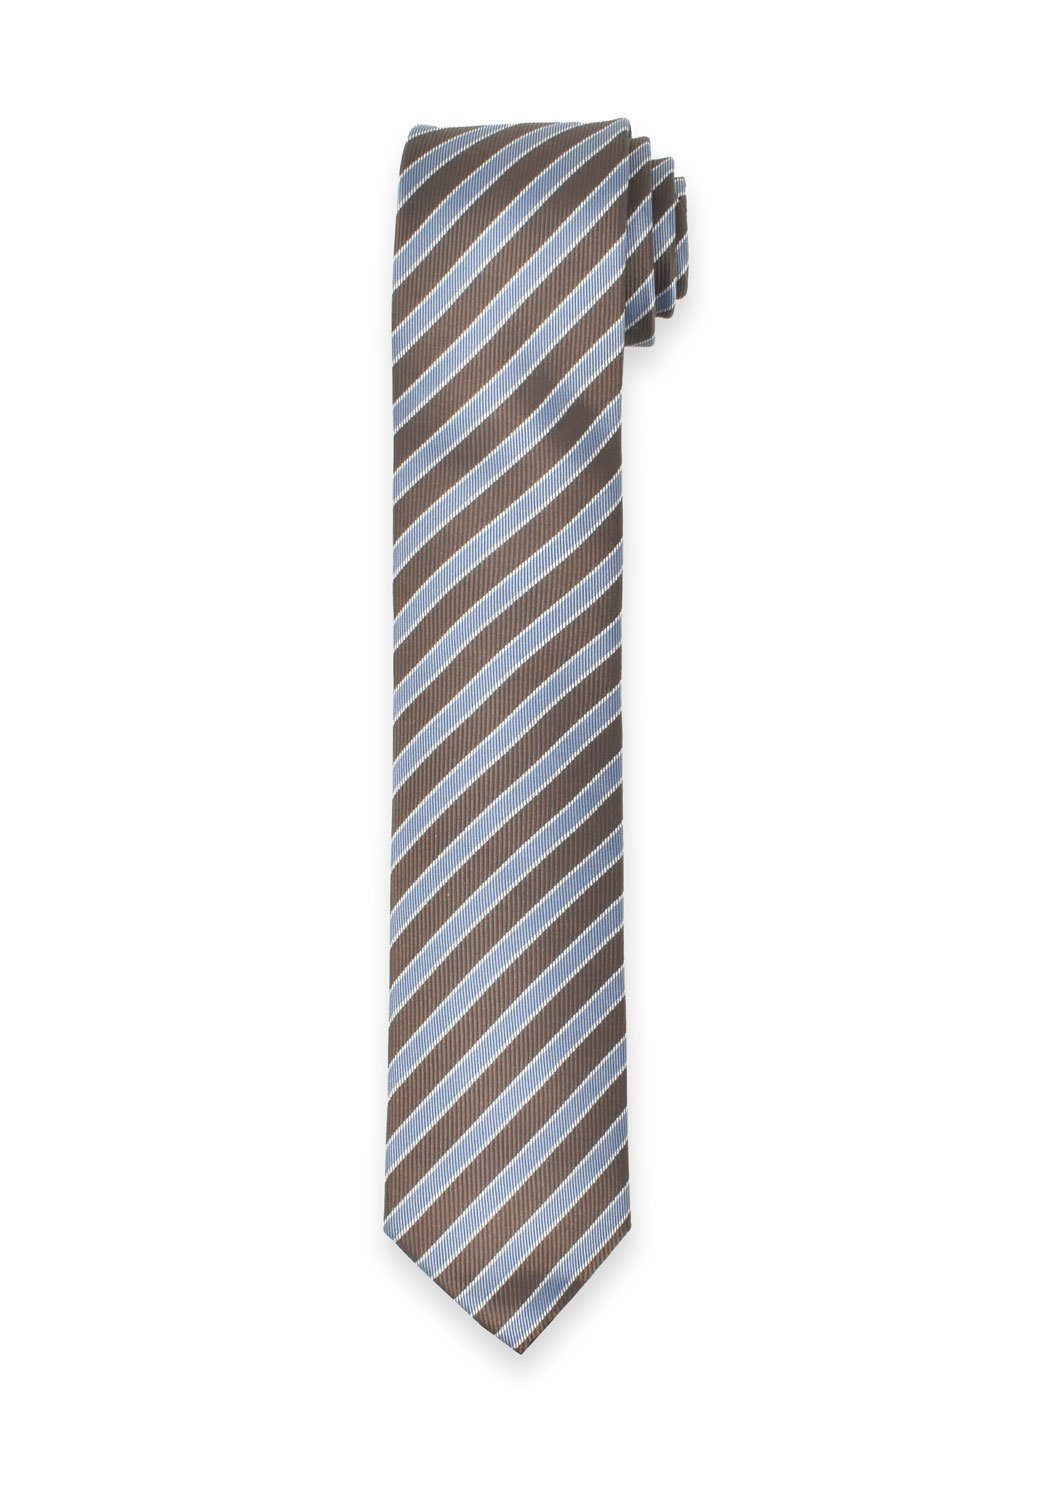 Super beliebt und 100 % Qualität garantiert! MARVELIS Krawatte Krawatte - - 6,5 Hellblau/Braun - Gestreift cm